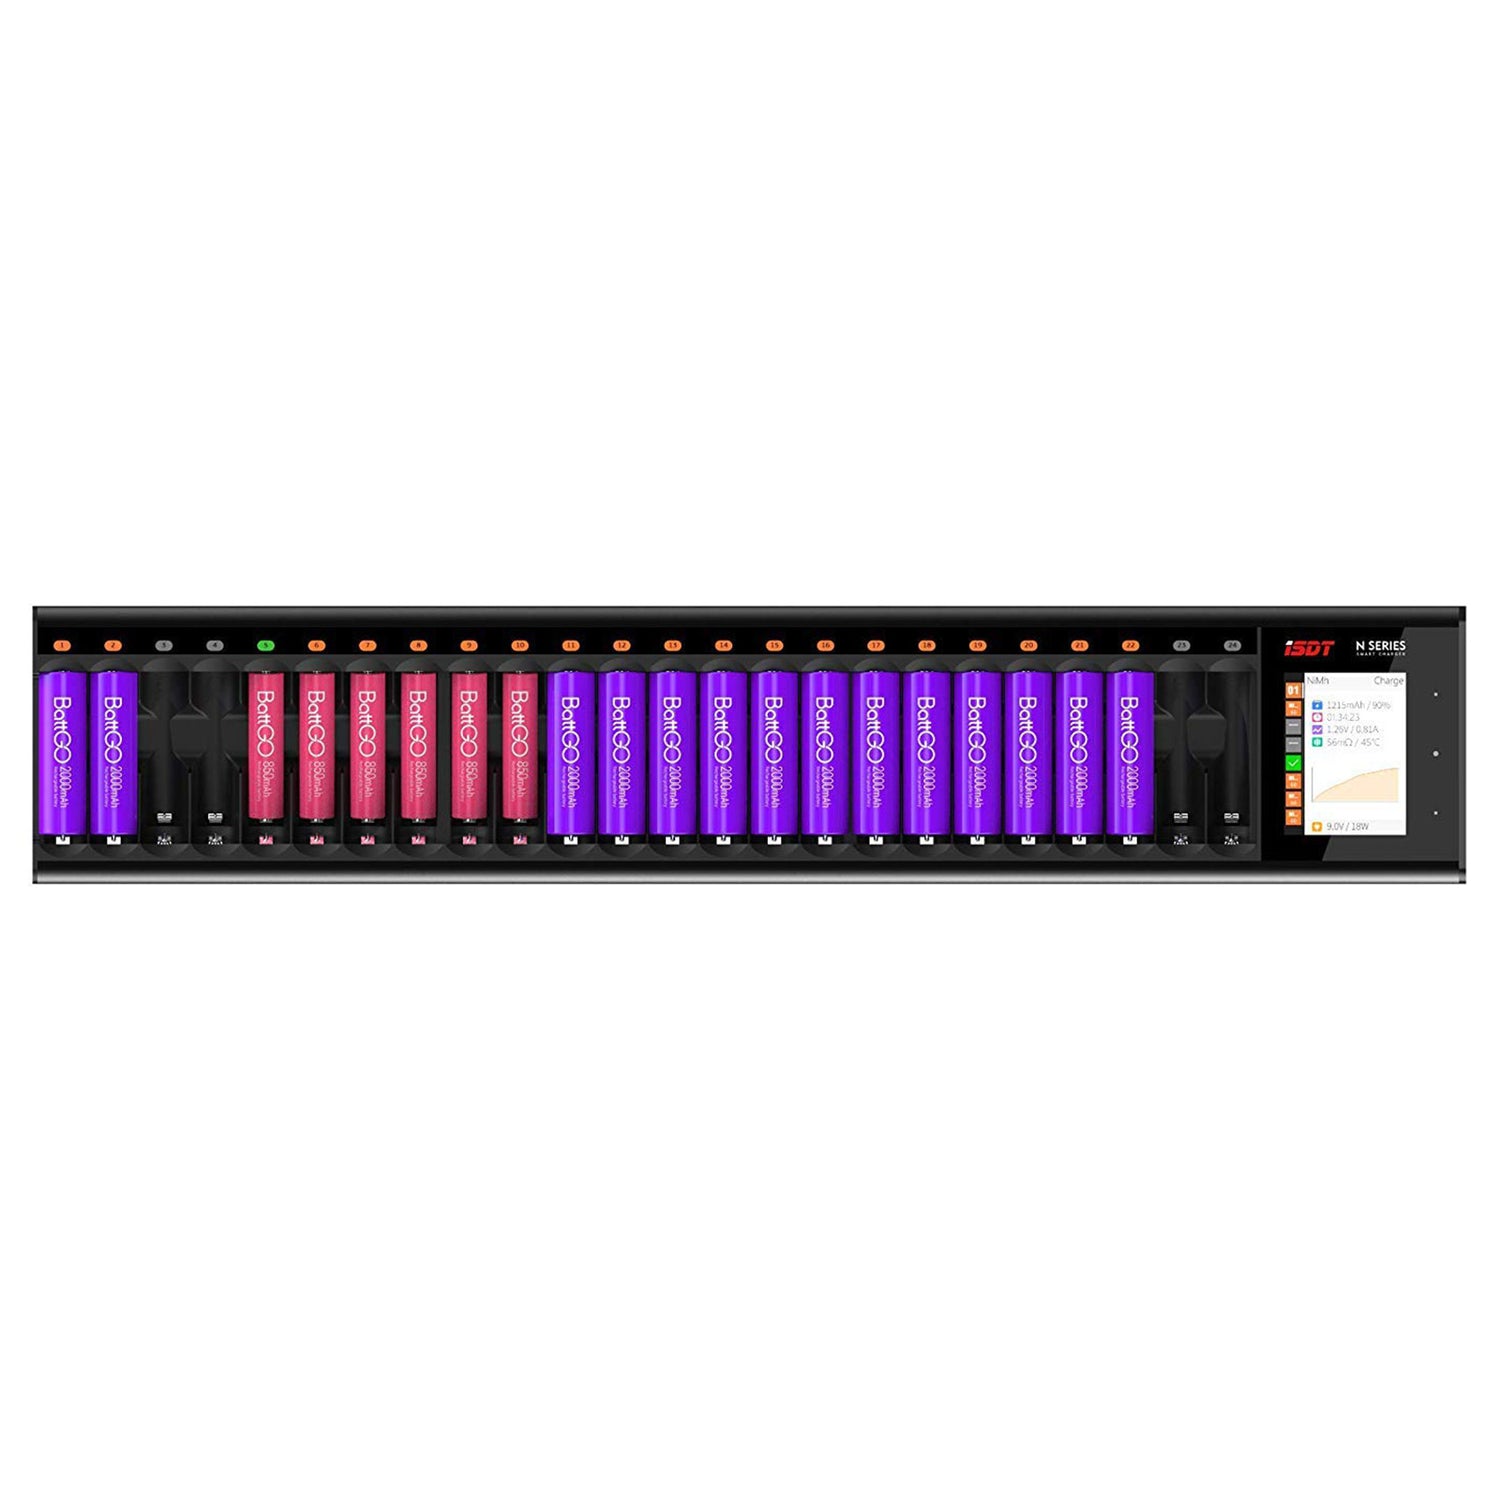 N24 LCD Cargador de batería de 24 ranuras para baterías recargables, cargador rápido de 48W para baterías AA/AAA